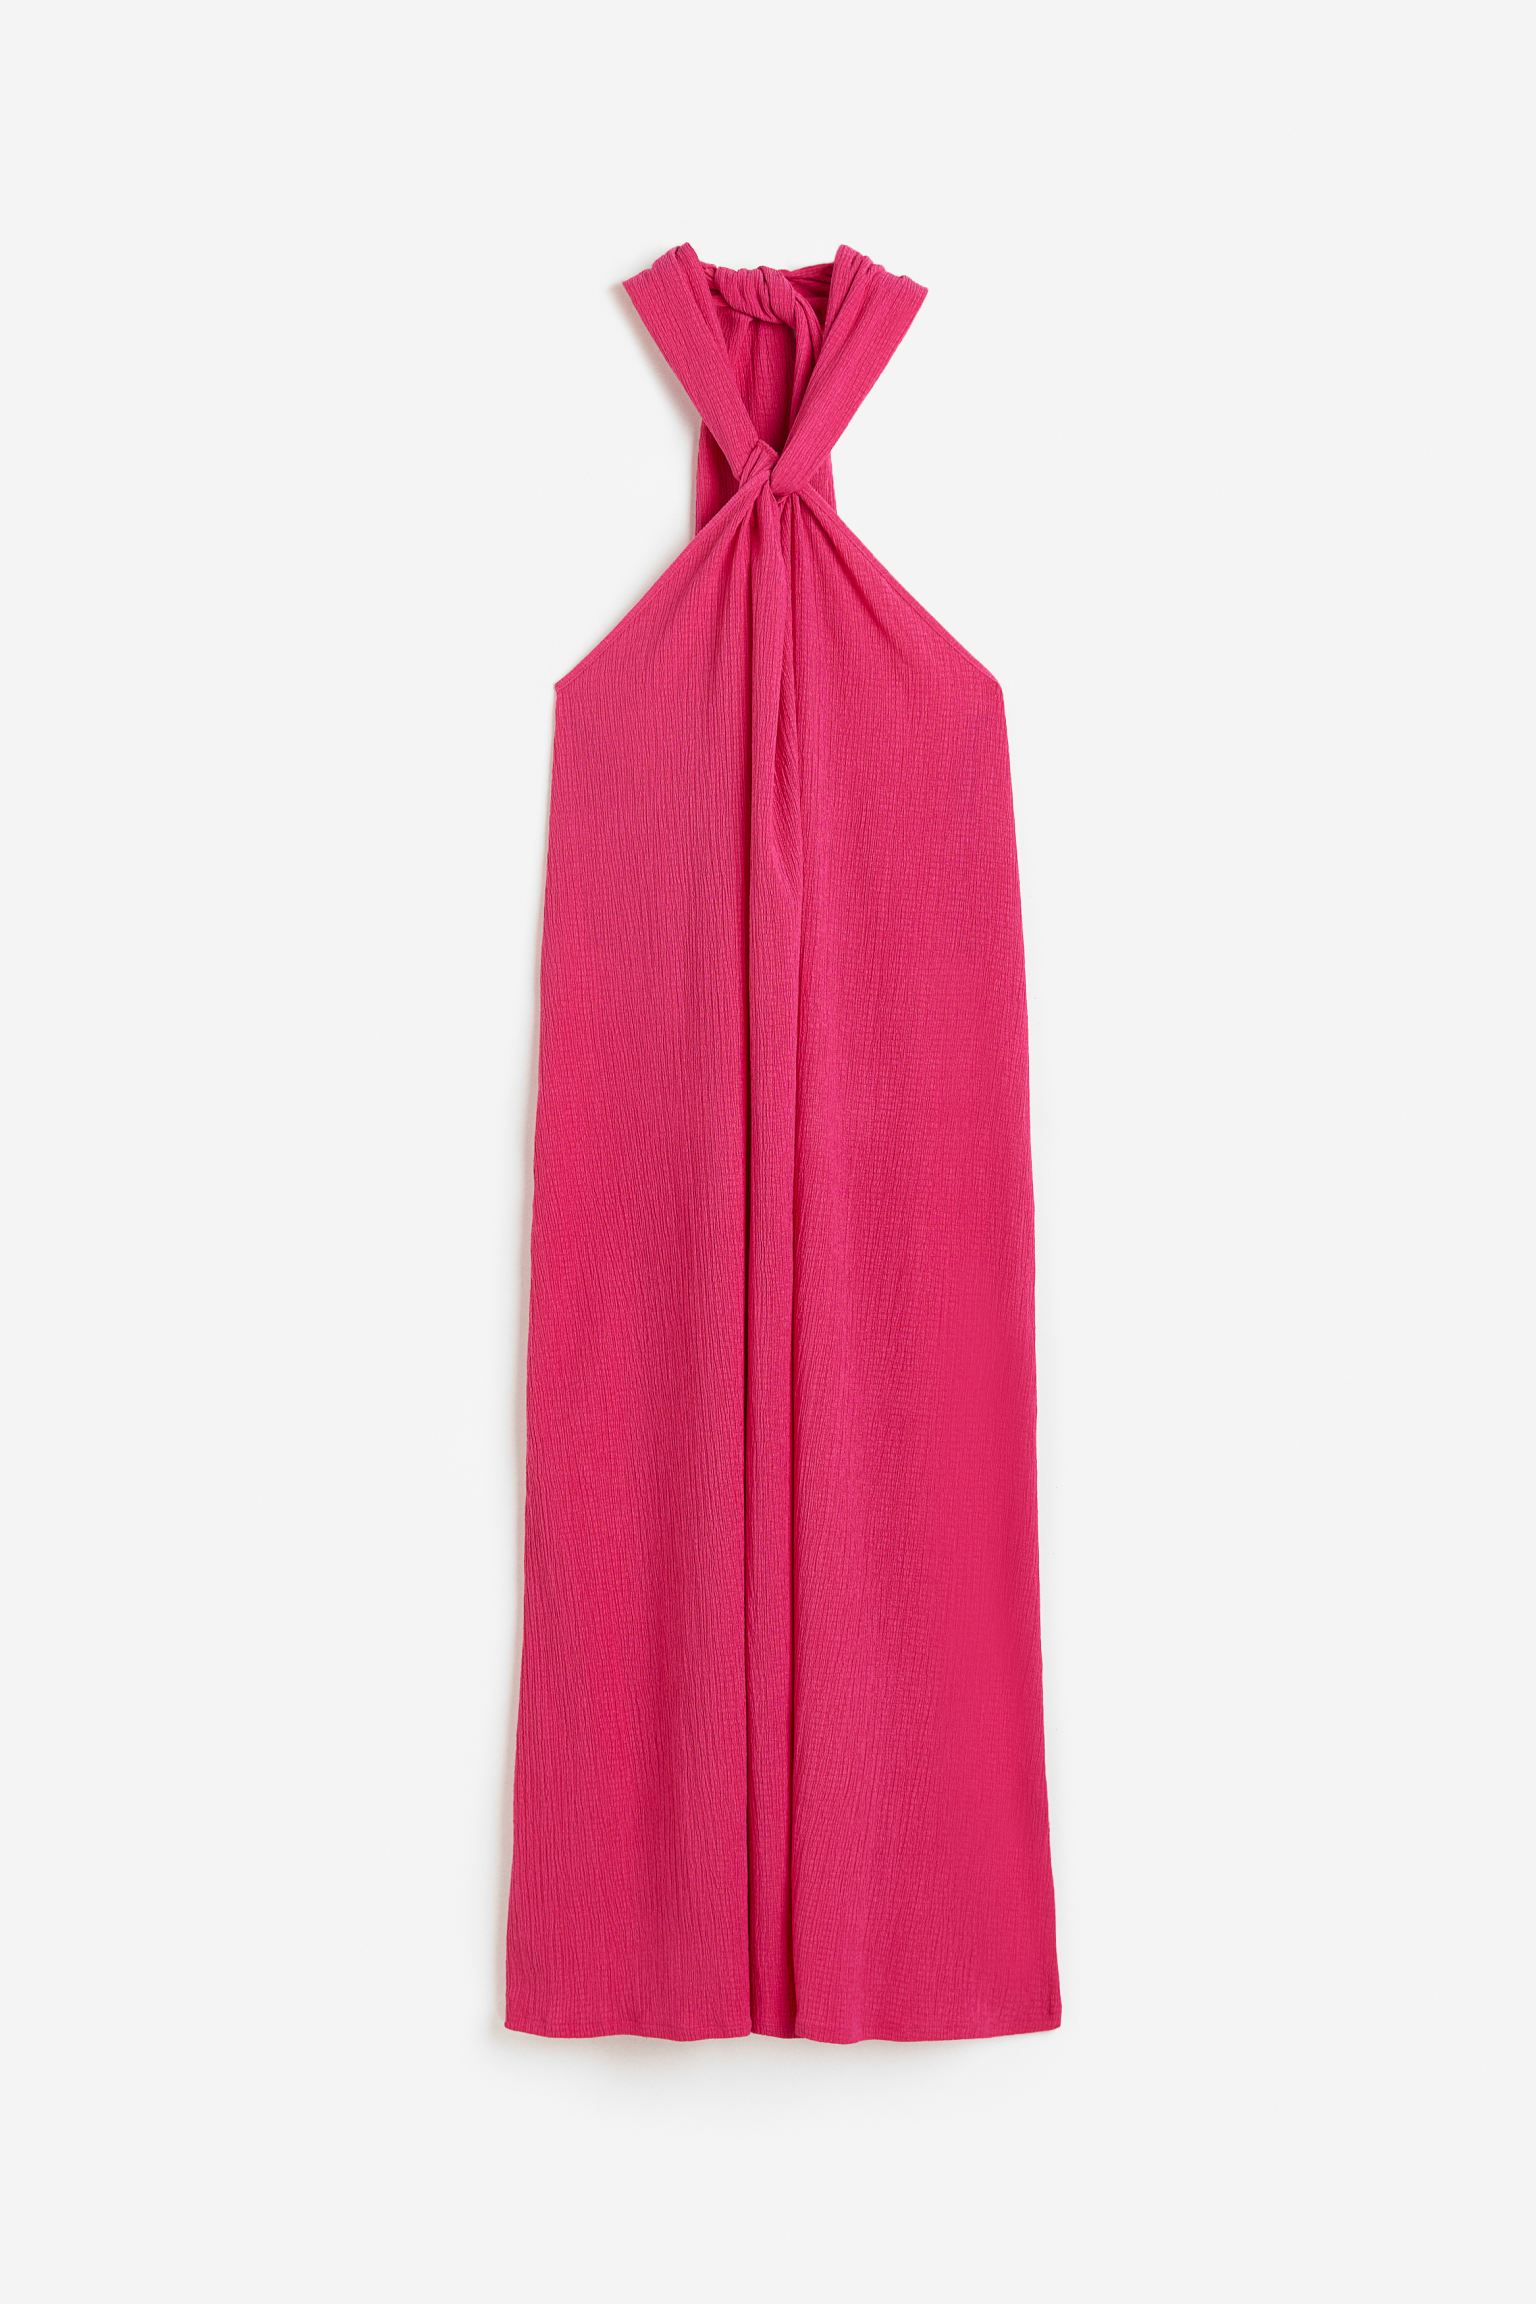 Платье женское H&M 1183137001 розовое 2XL (доставка из-за рубежа)